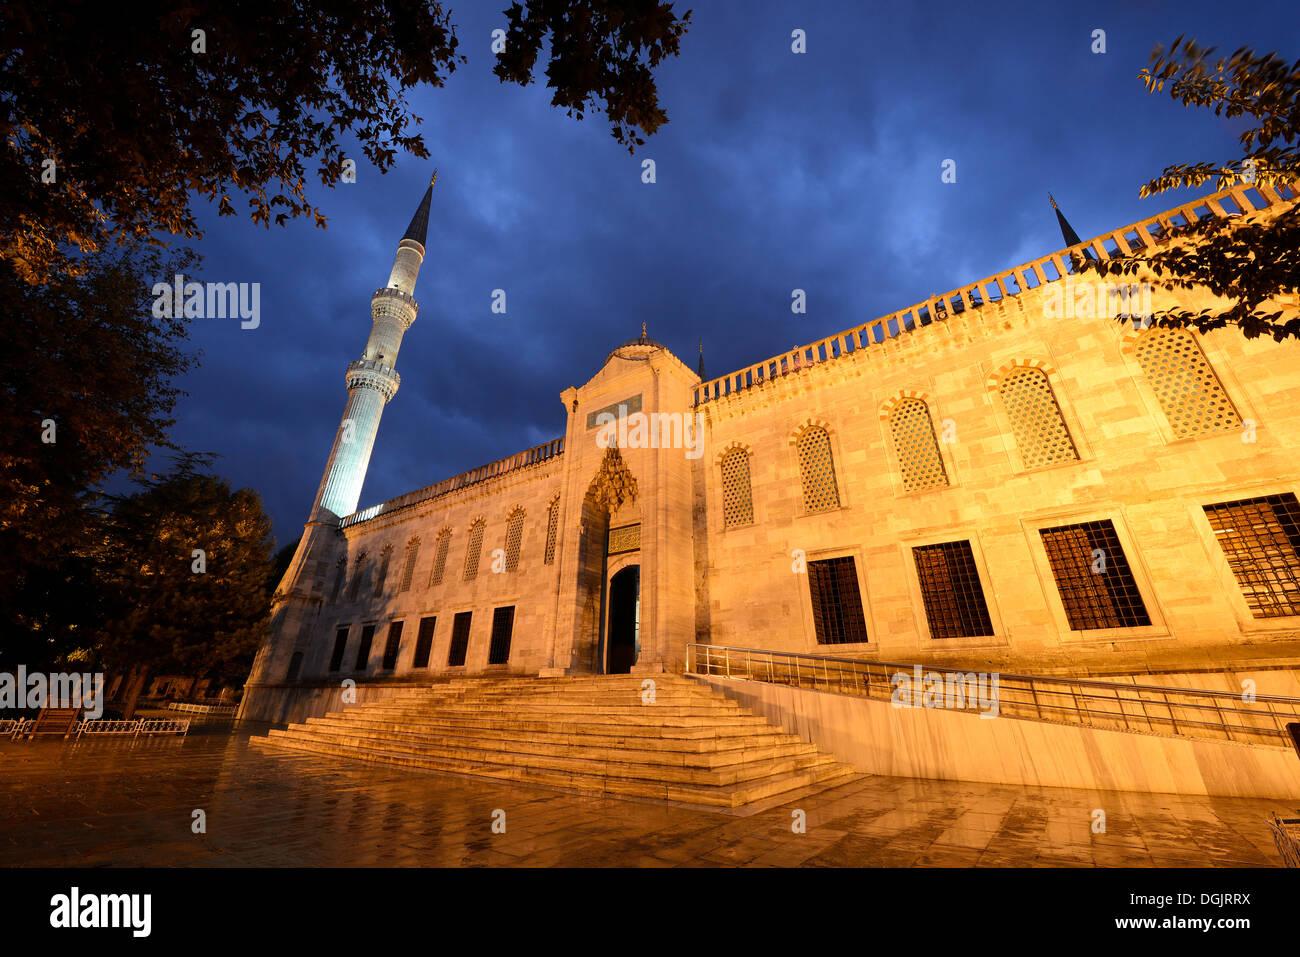 Portail d'entrée de la Mosquée Bleue, également connu sous le nom de mosquée Sultan Ahmed, Sultanahmet Camii, Site du patrimoine culturel mondial de l'UNESCO Banque D'Images